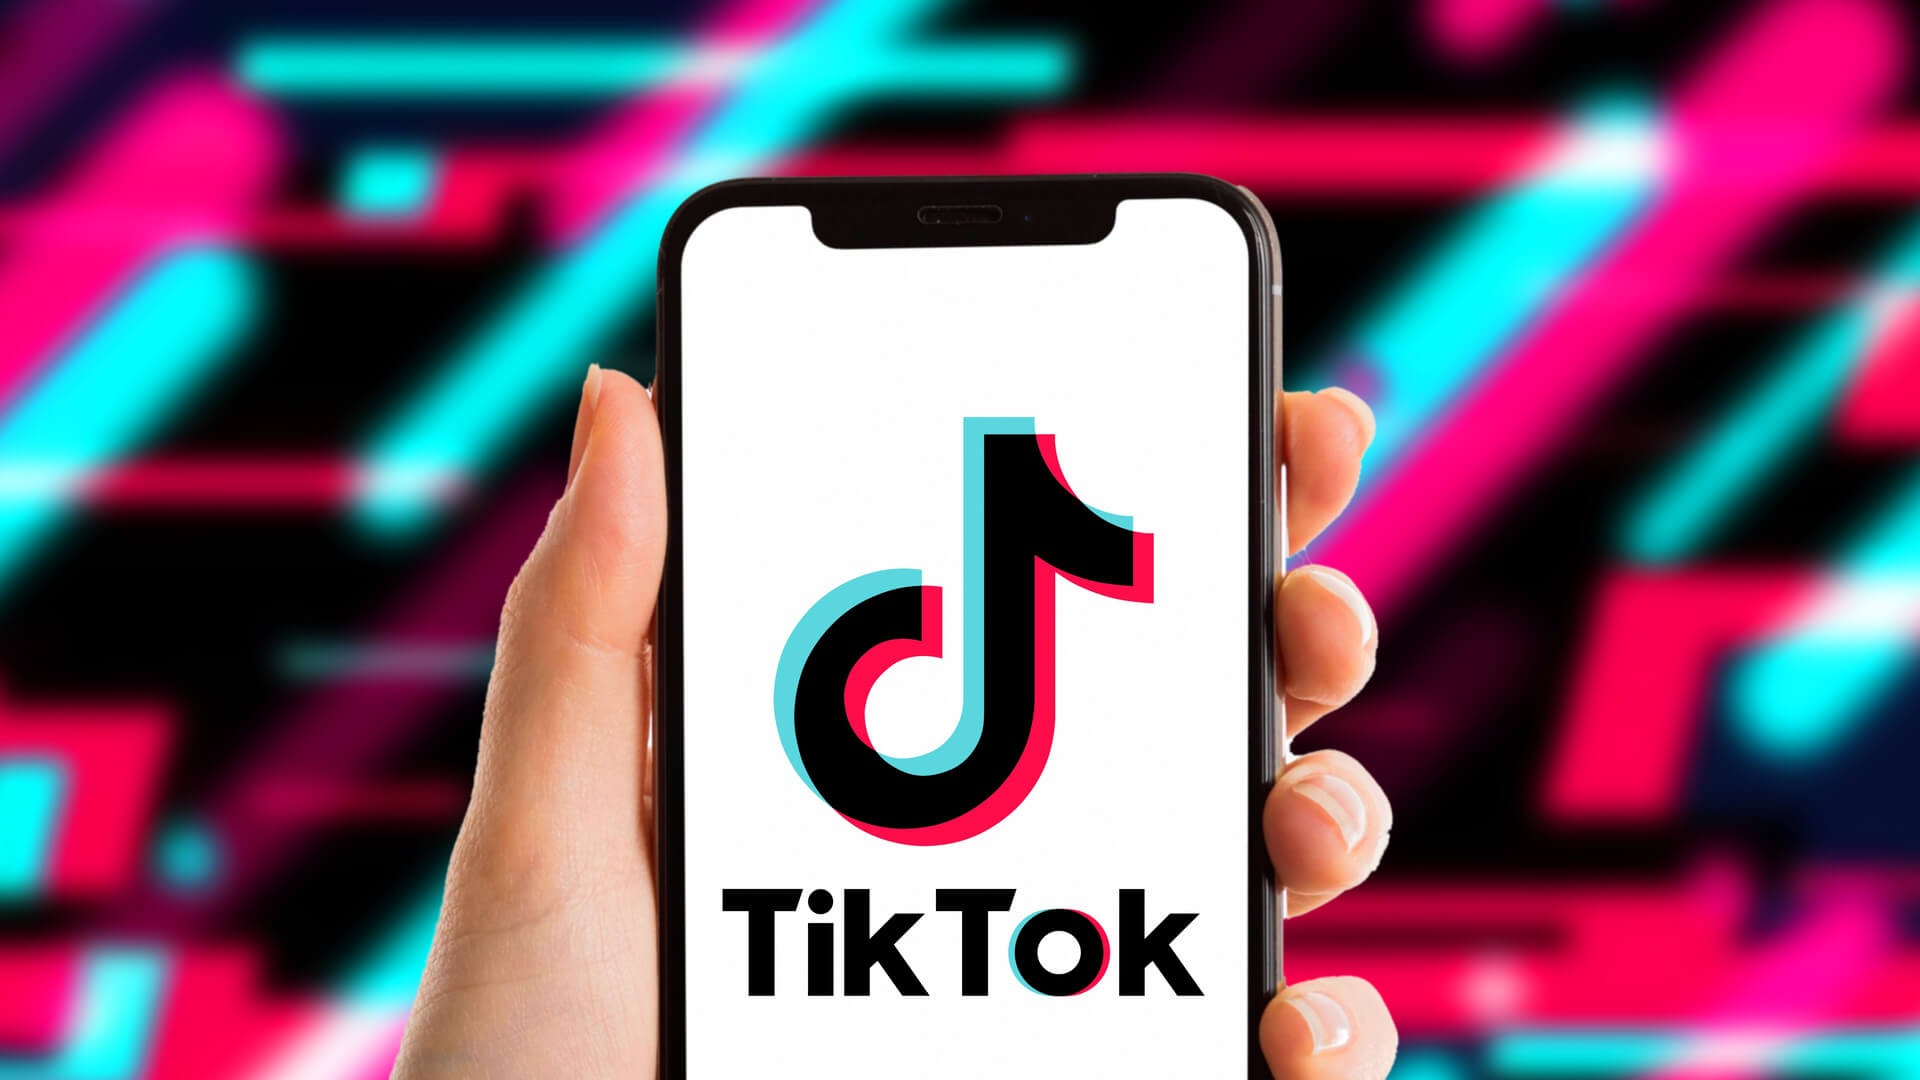 Một bức ảnh TikTok đang được phát sóng với nhạc nền sẽ mang đến cho bạn cảm giác như đang tham gia vào một bộ phim âm nhạc thực sự. Hãy tận hưởng những giai điệu tuyệt vời và đủ sức cuốn hút để làm cho bạn say mê từ đầu đến cuối.